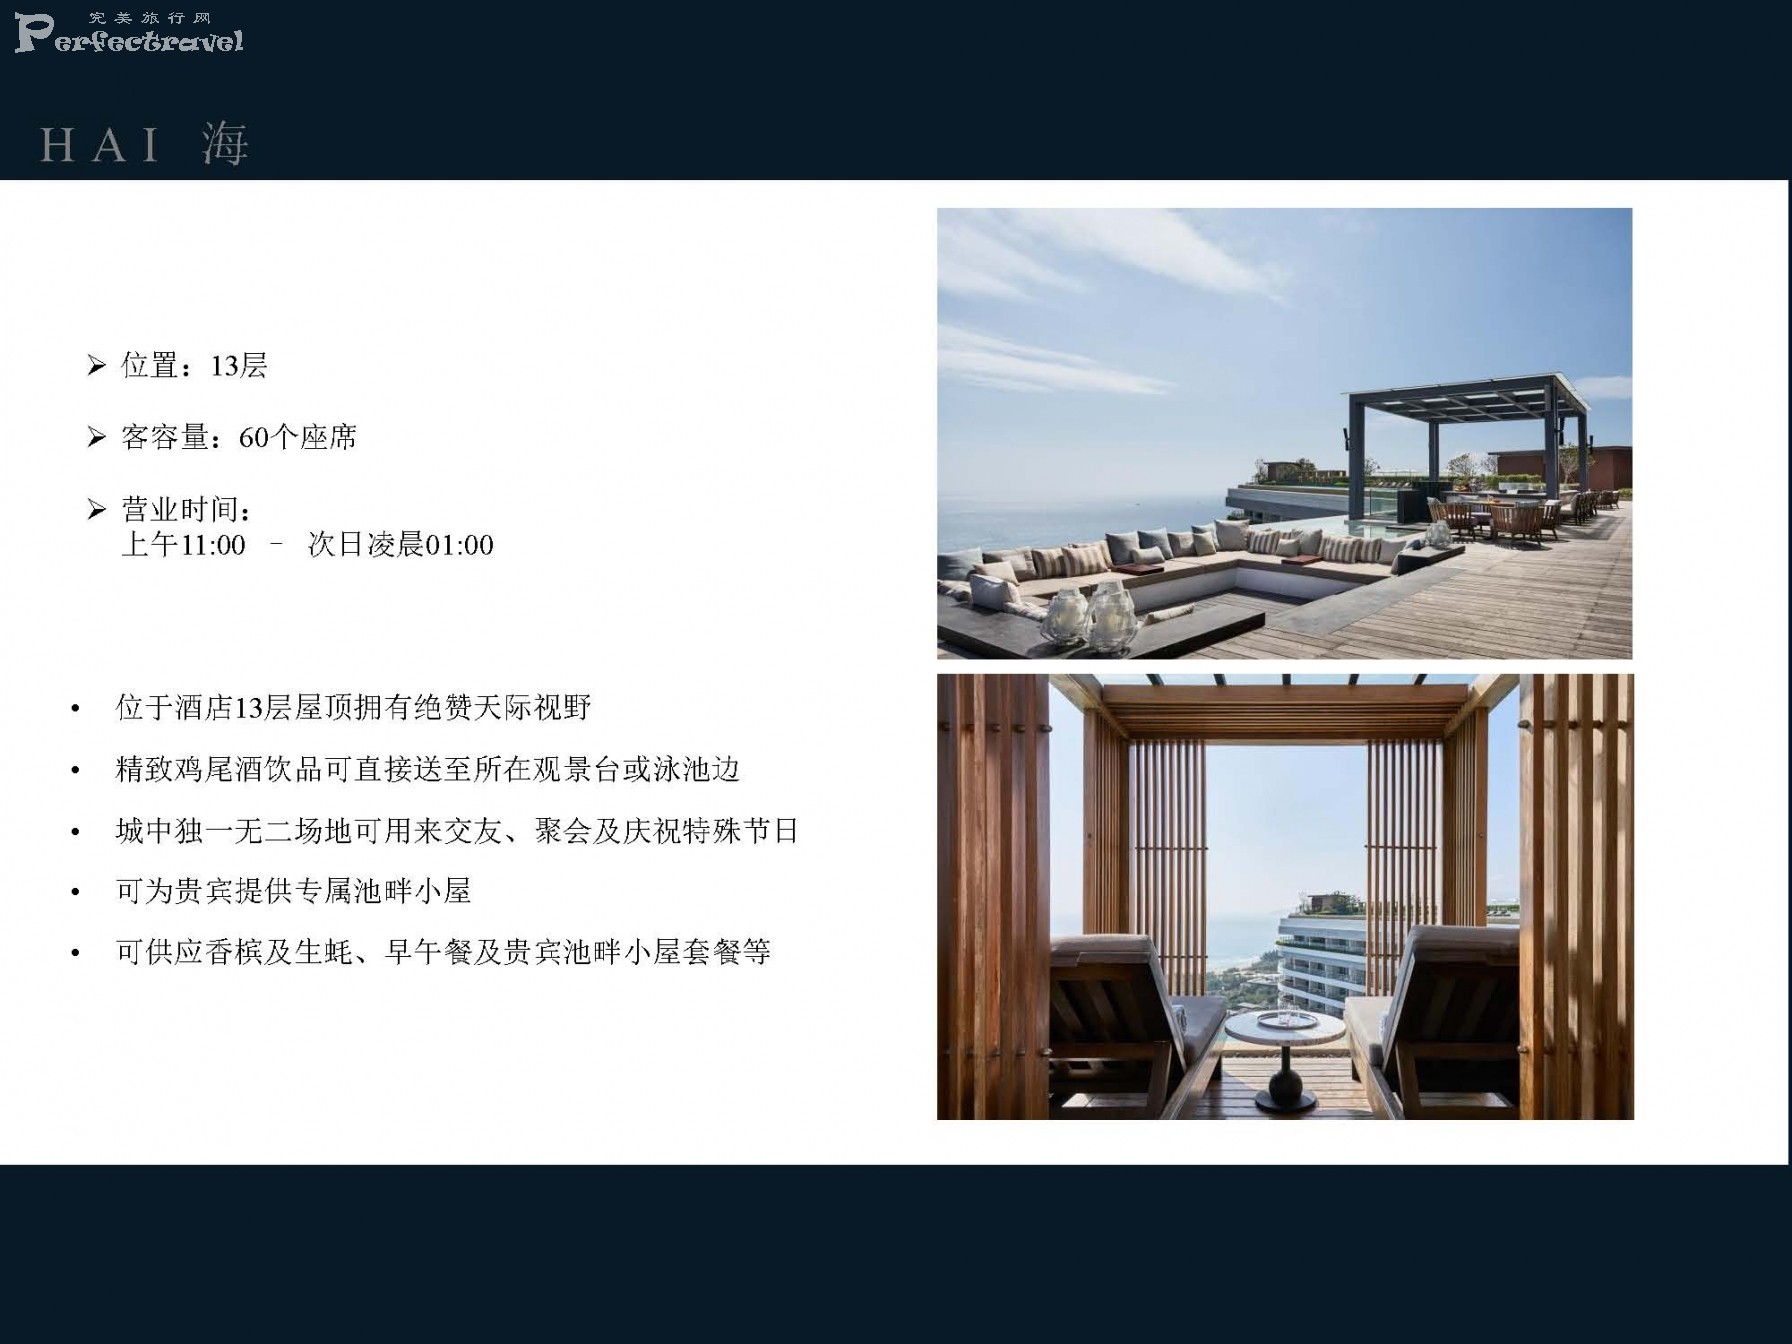 三亚保利瑰丽酒店介绍-2020_Page_11.jpg